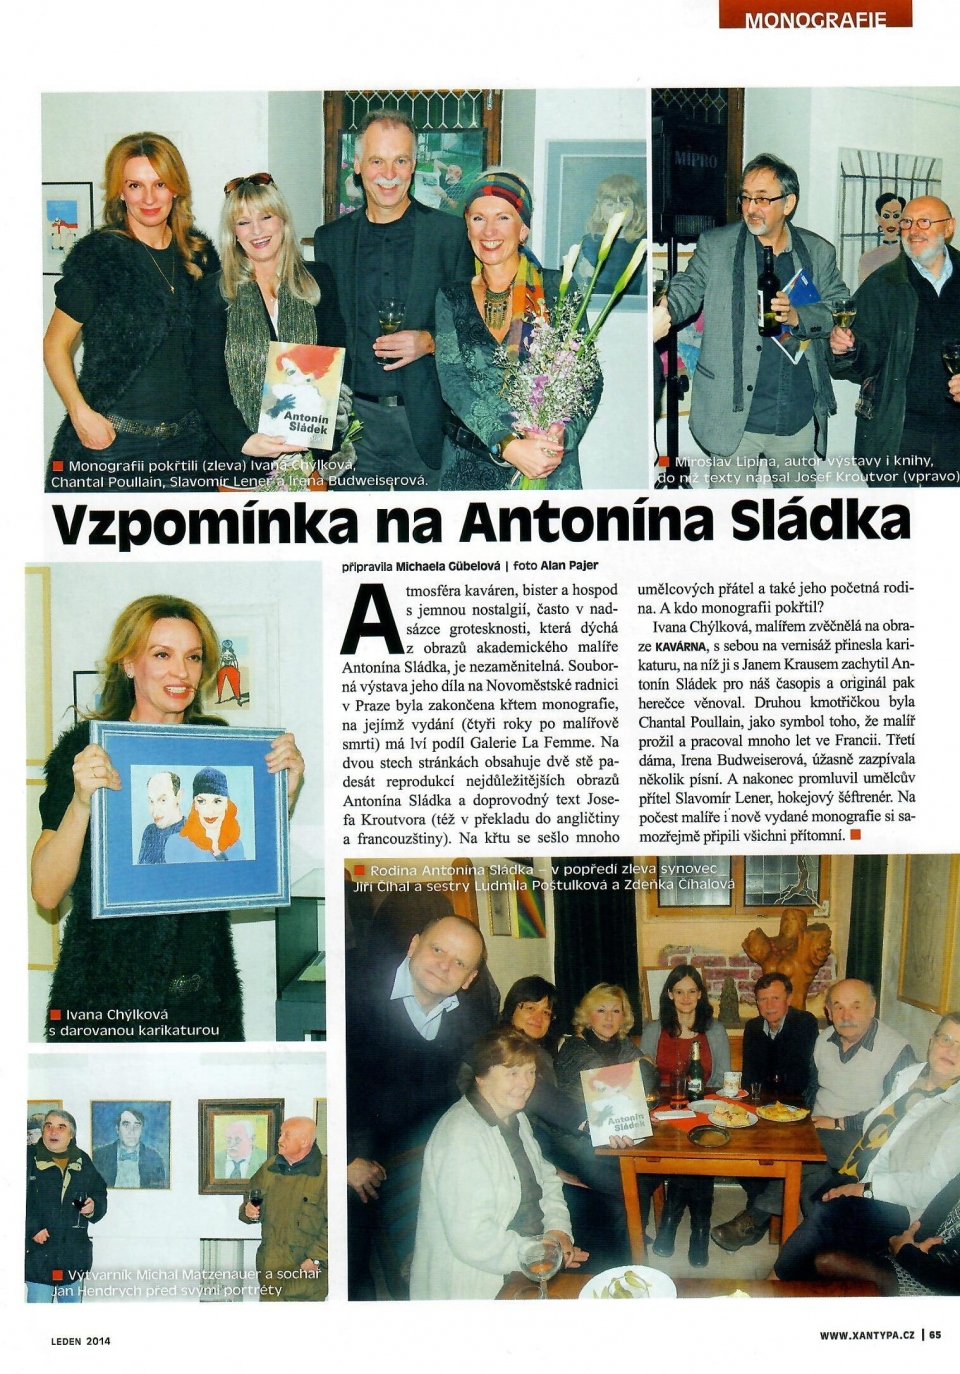 From the Media: Xantypa, January 2014